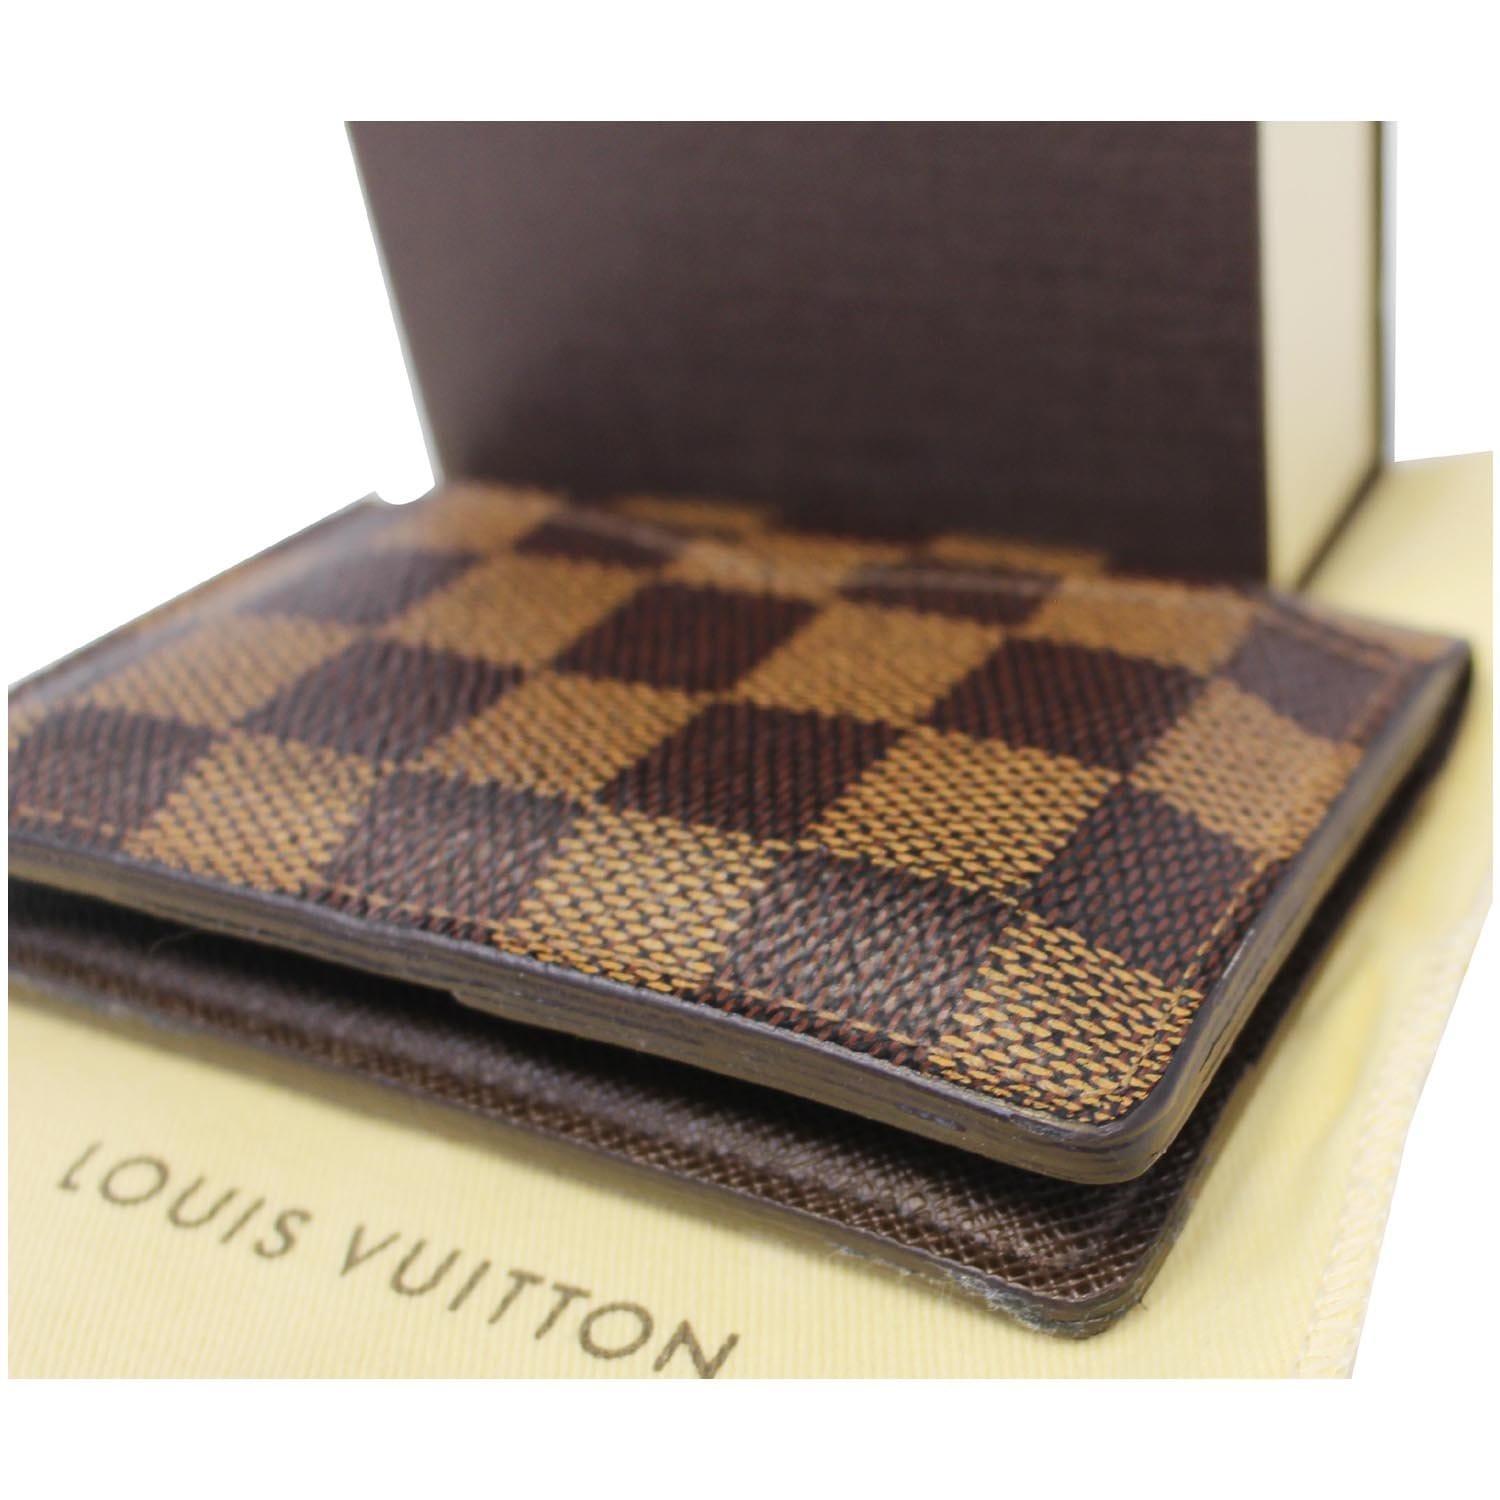 Louis Vuitton Card Case Damier Ebene – yourvintagelvoe